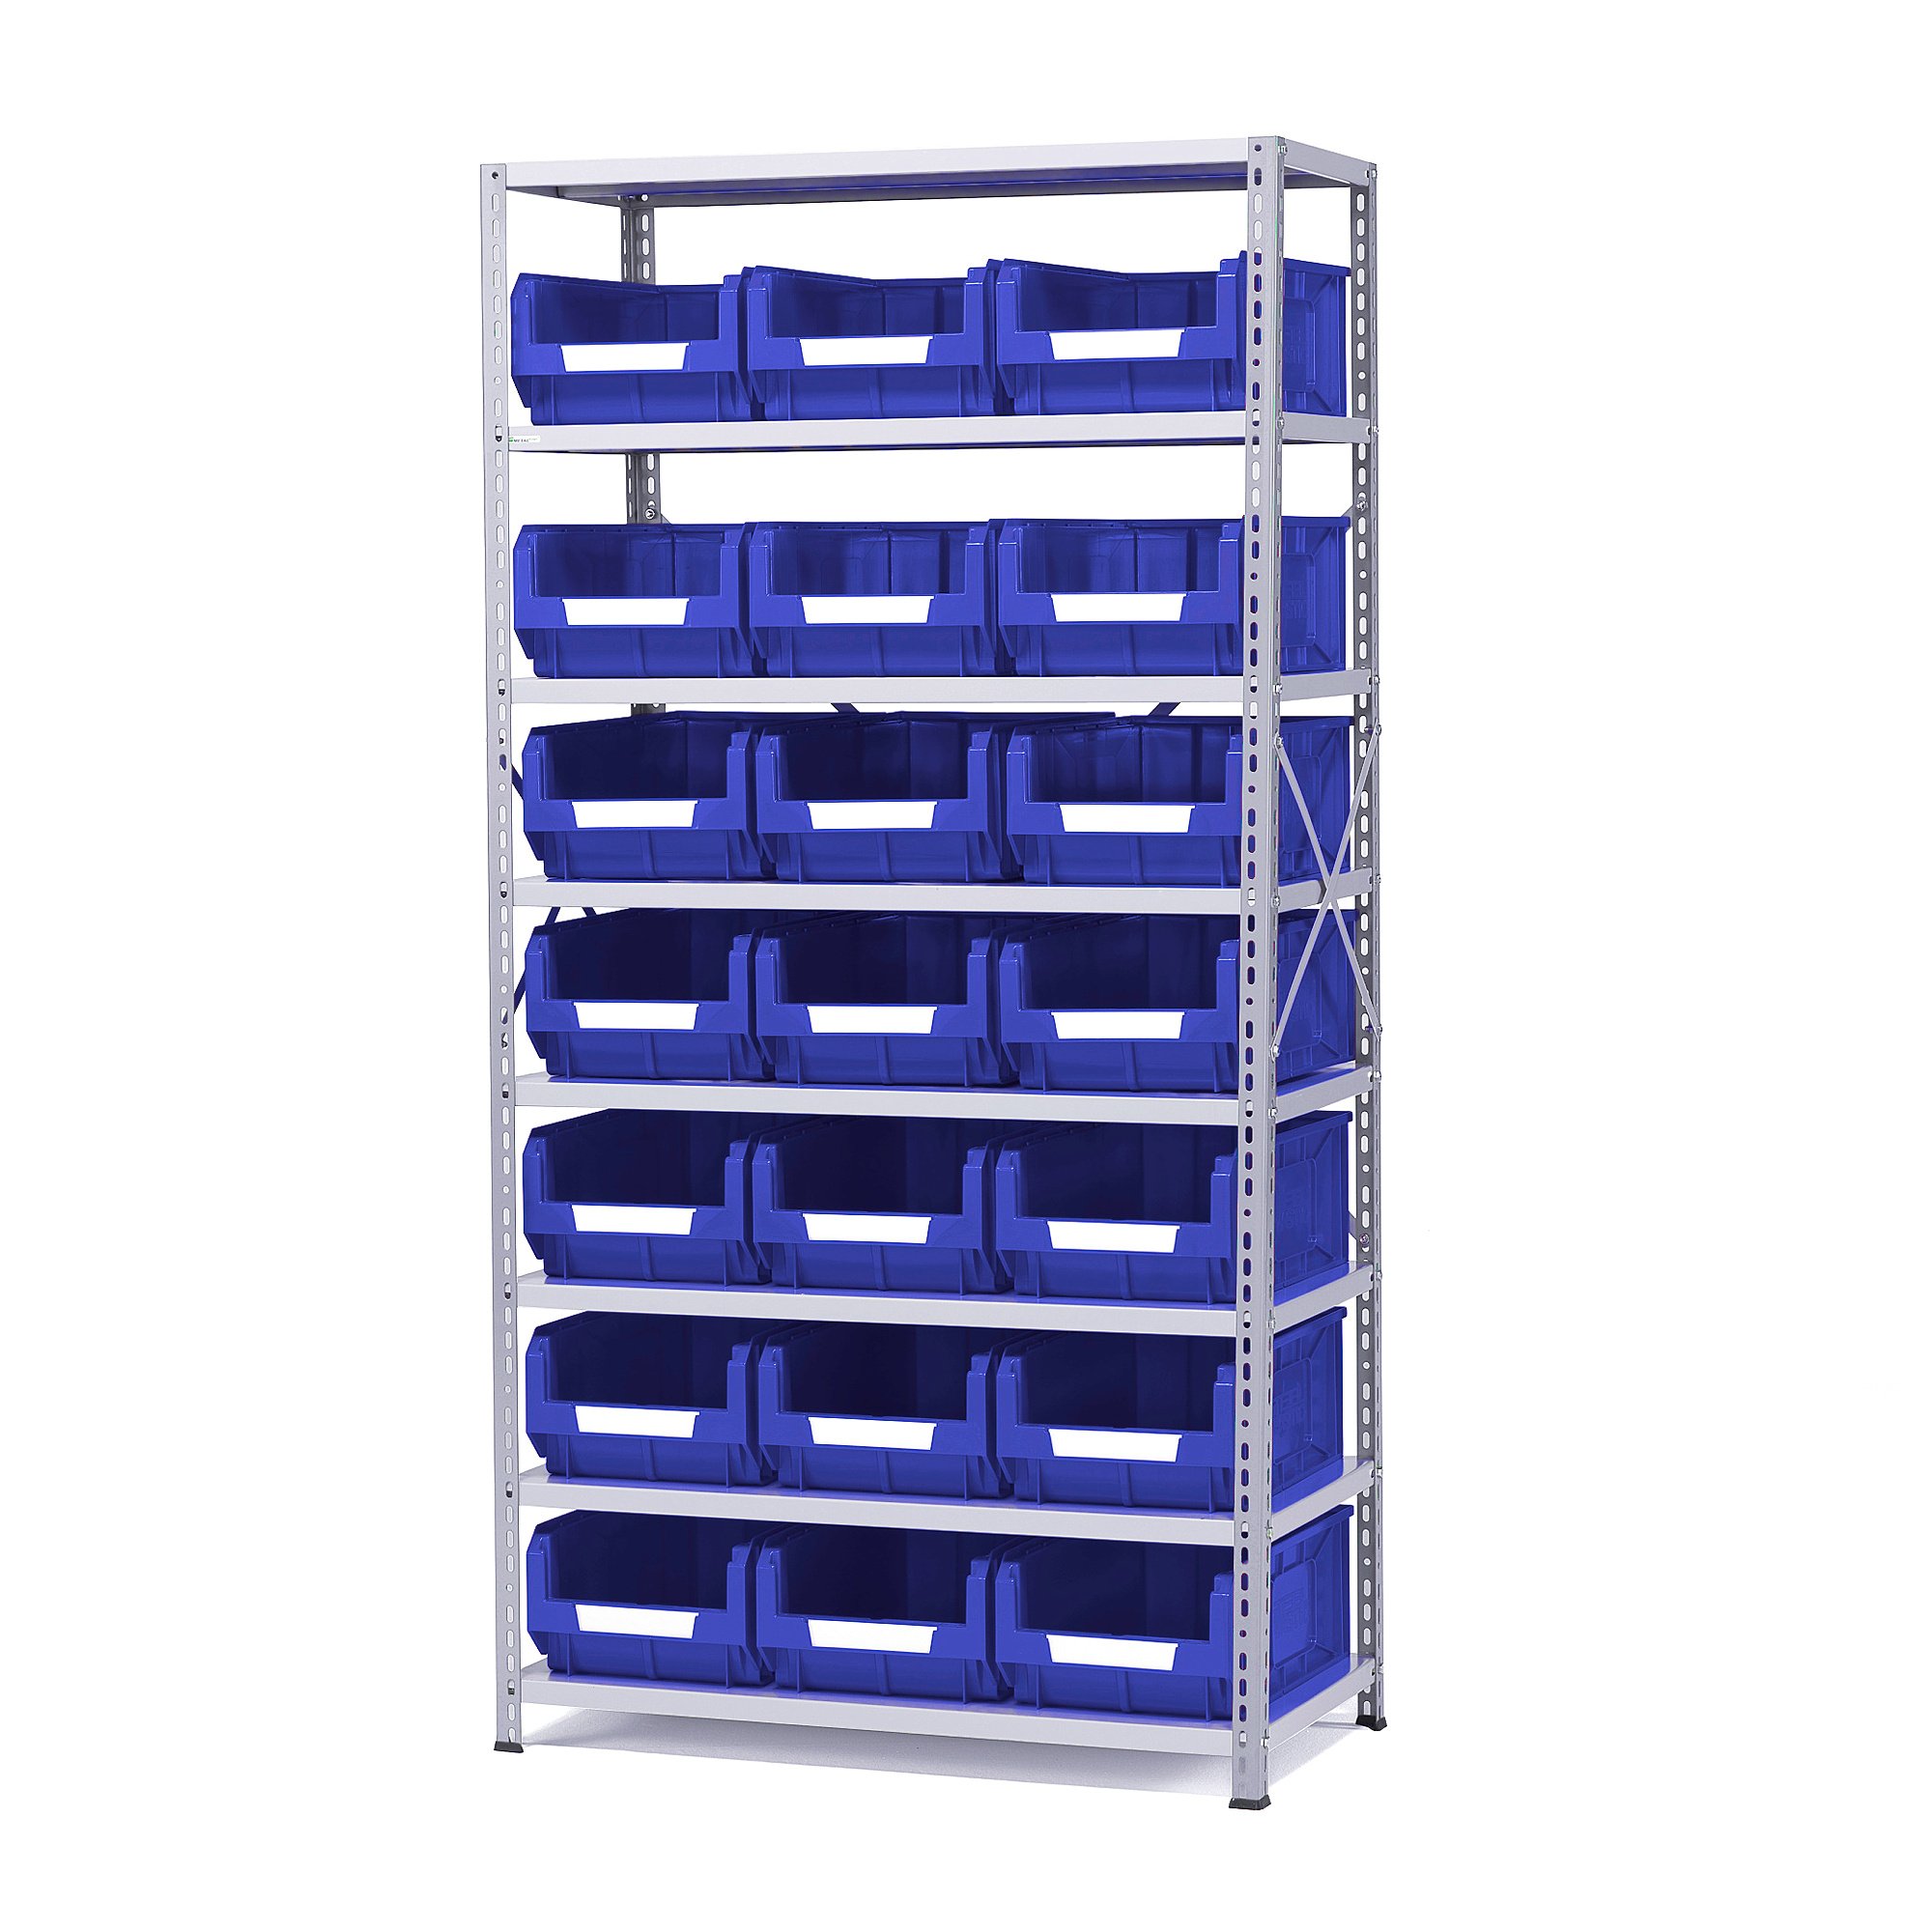 Regál s plastovými boxy APART + POWER, 1970x1000x500 mm, 21 modrých boxů